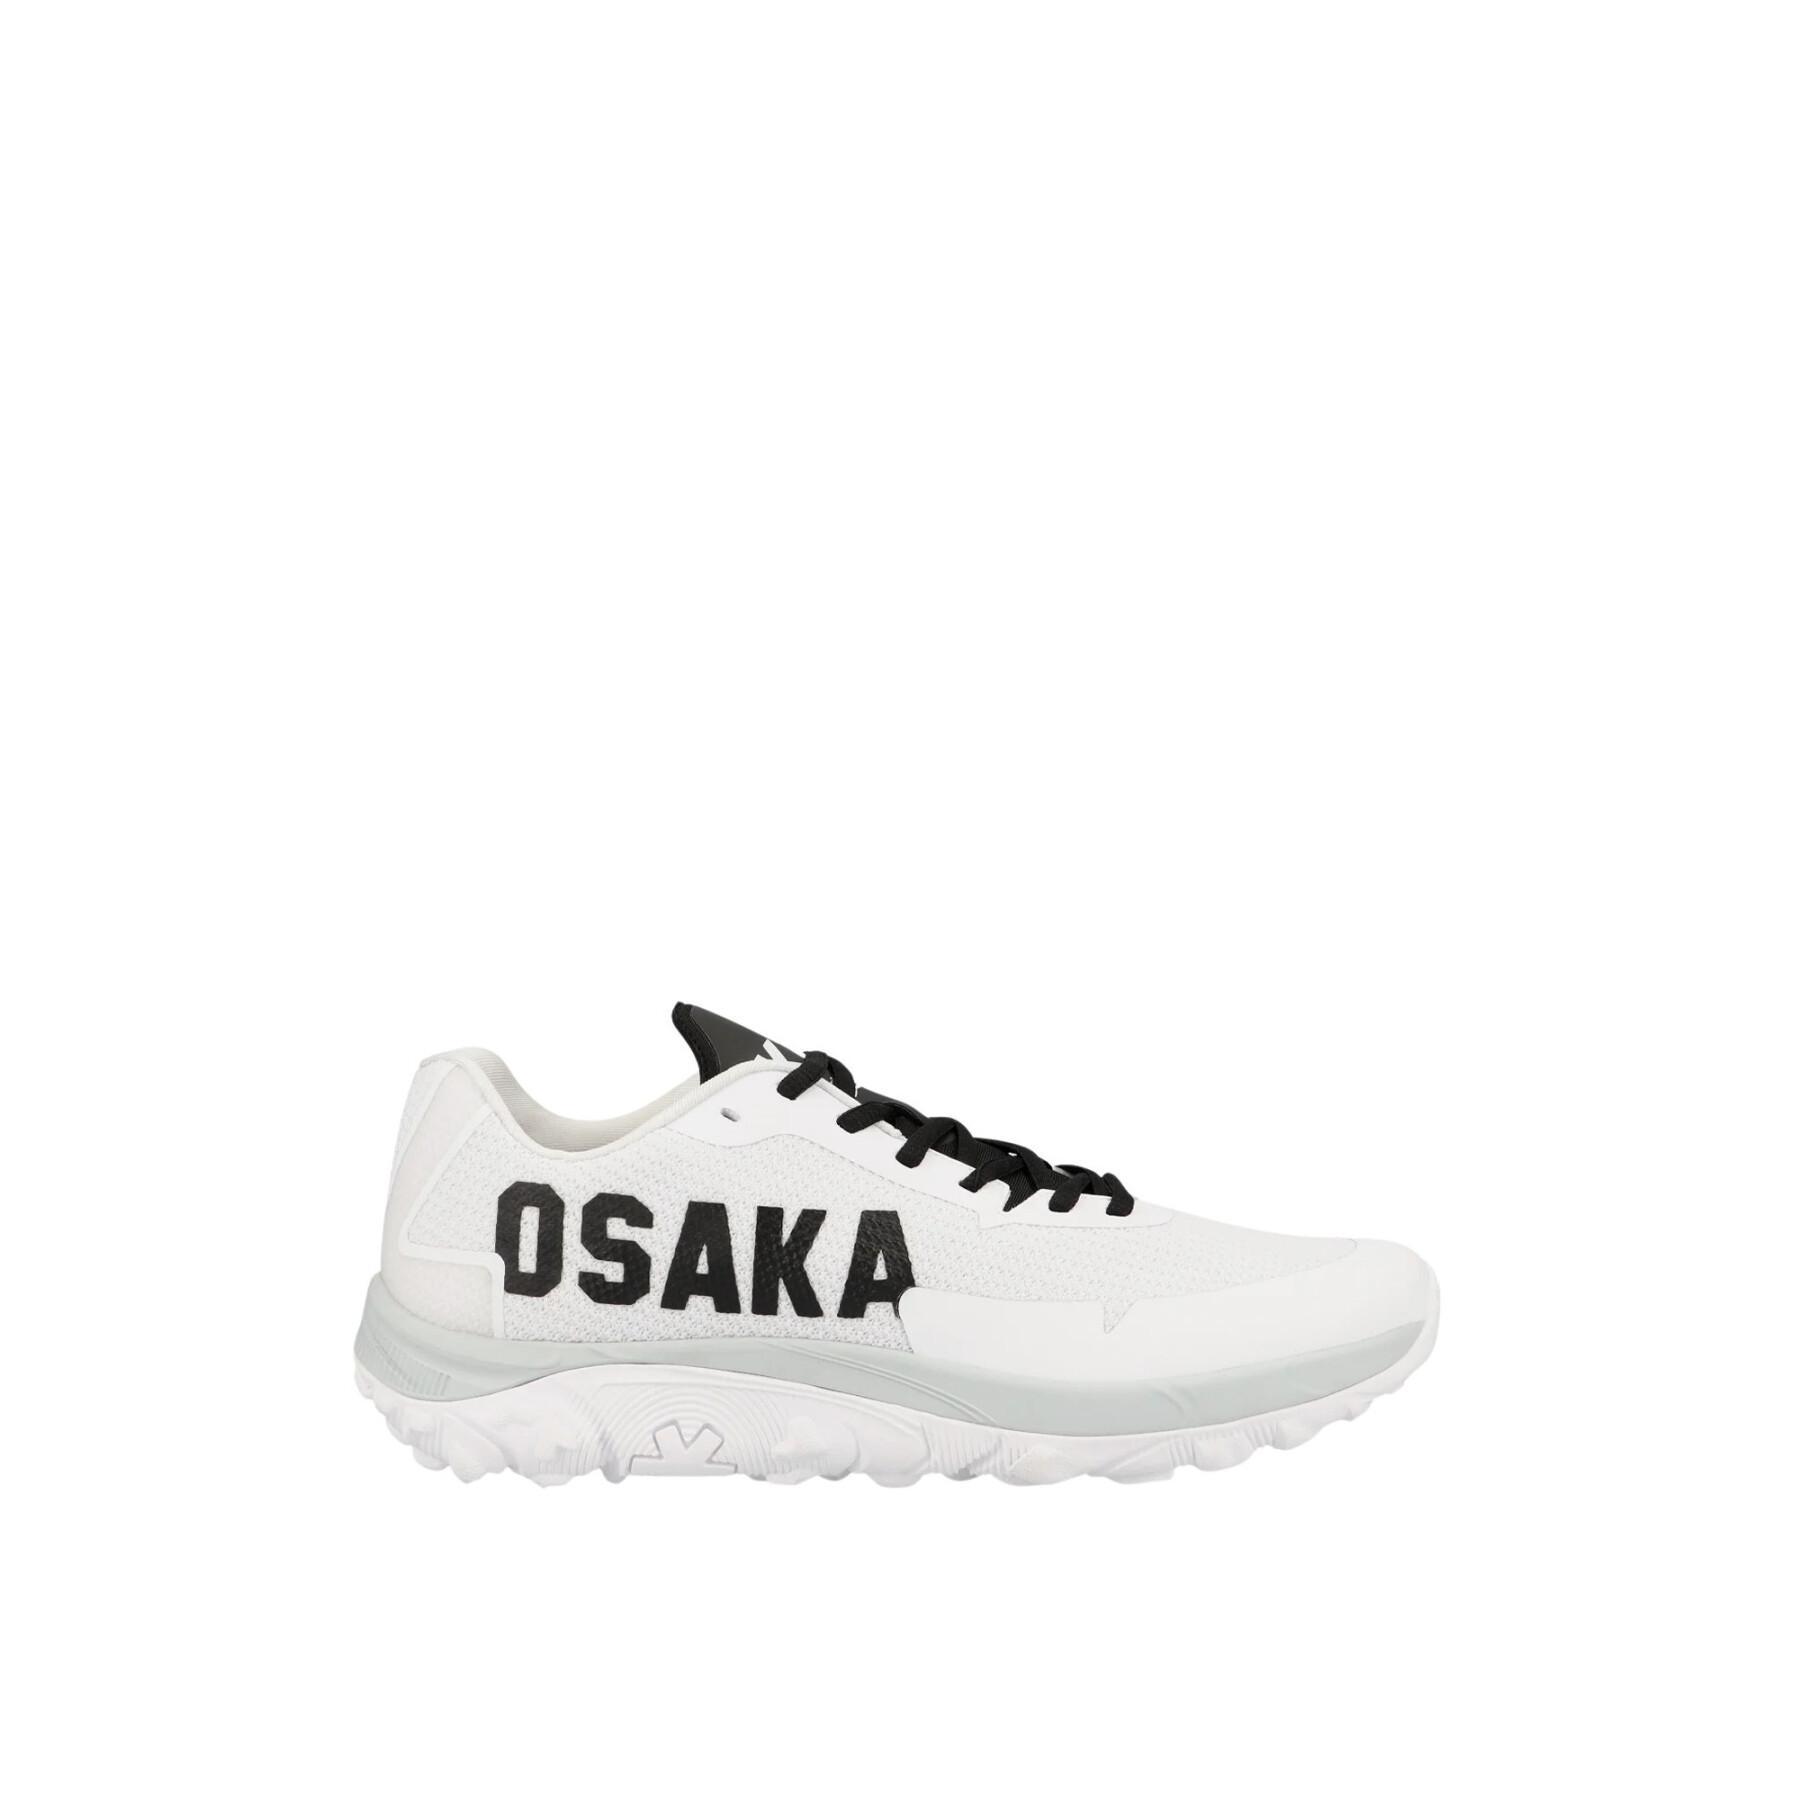 Schoenen Osaka